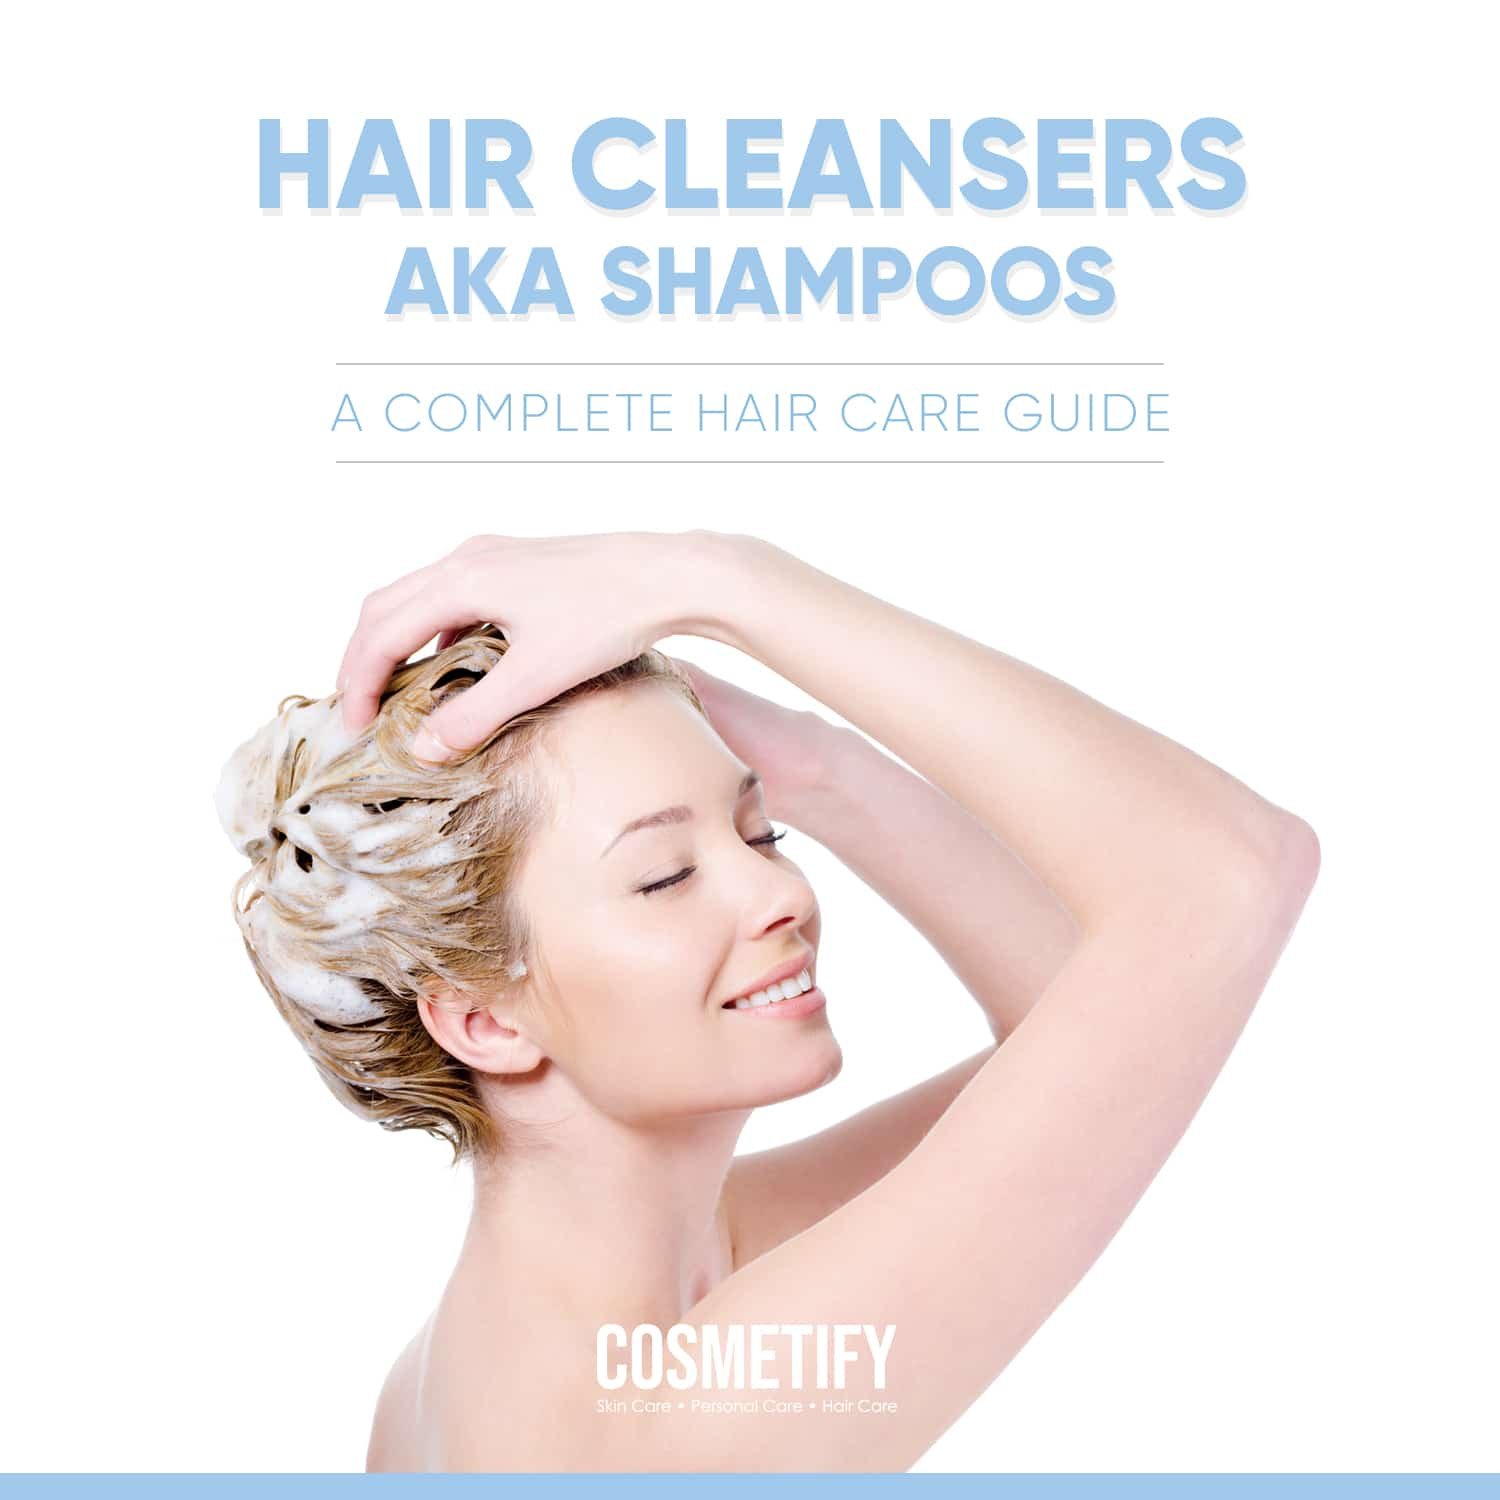 Hair Cleansers AKA Shampoos